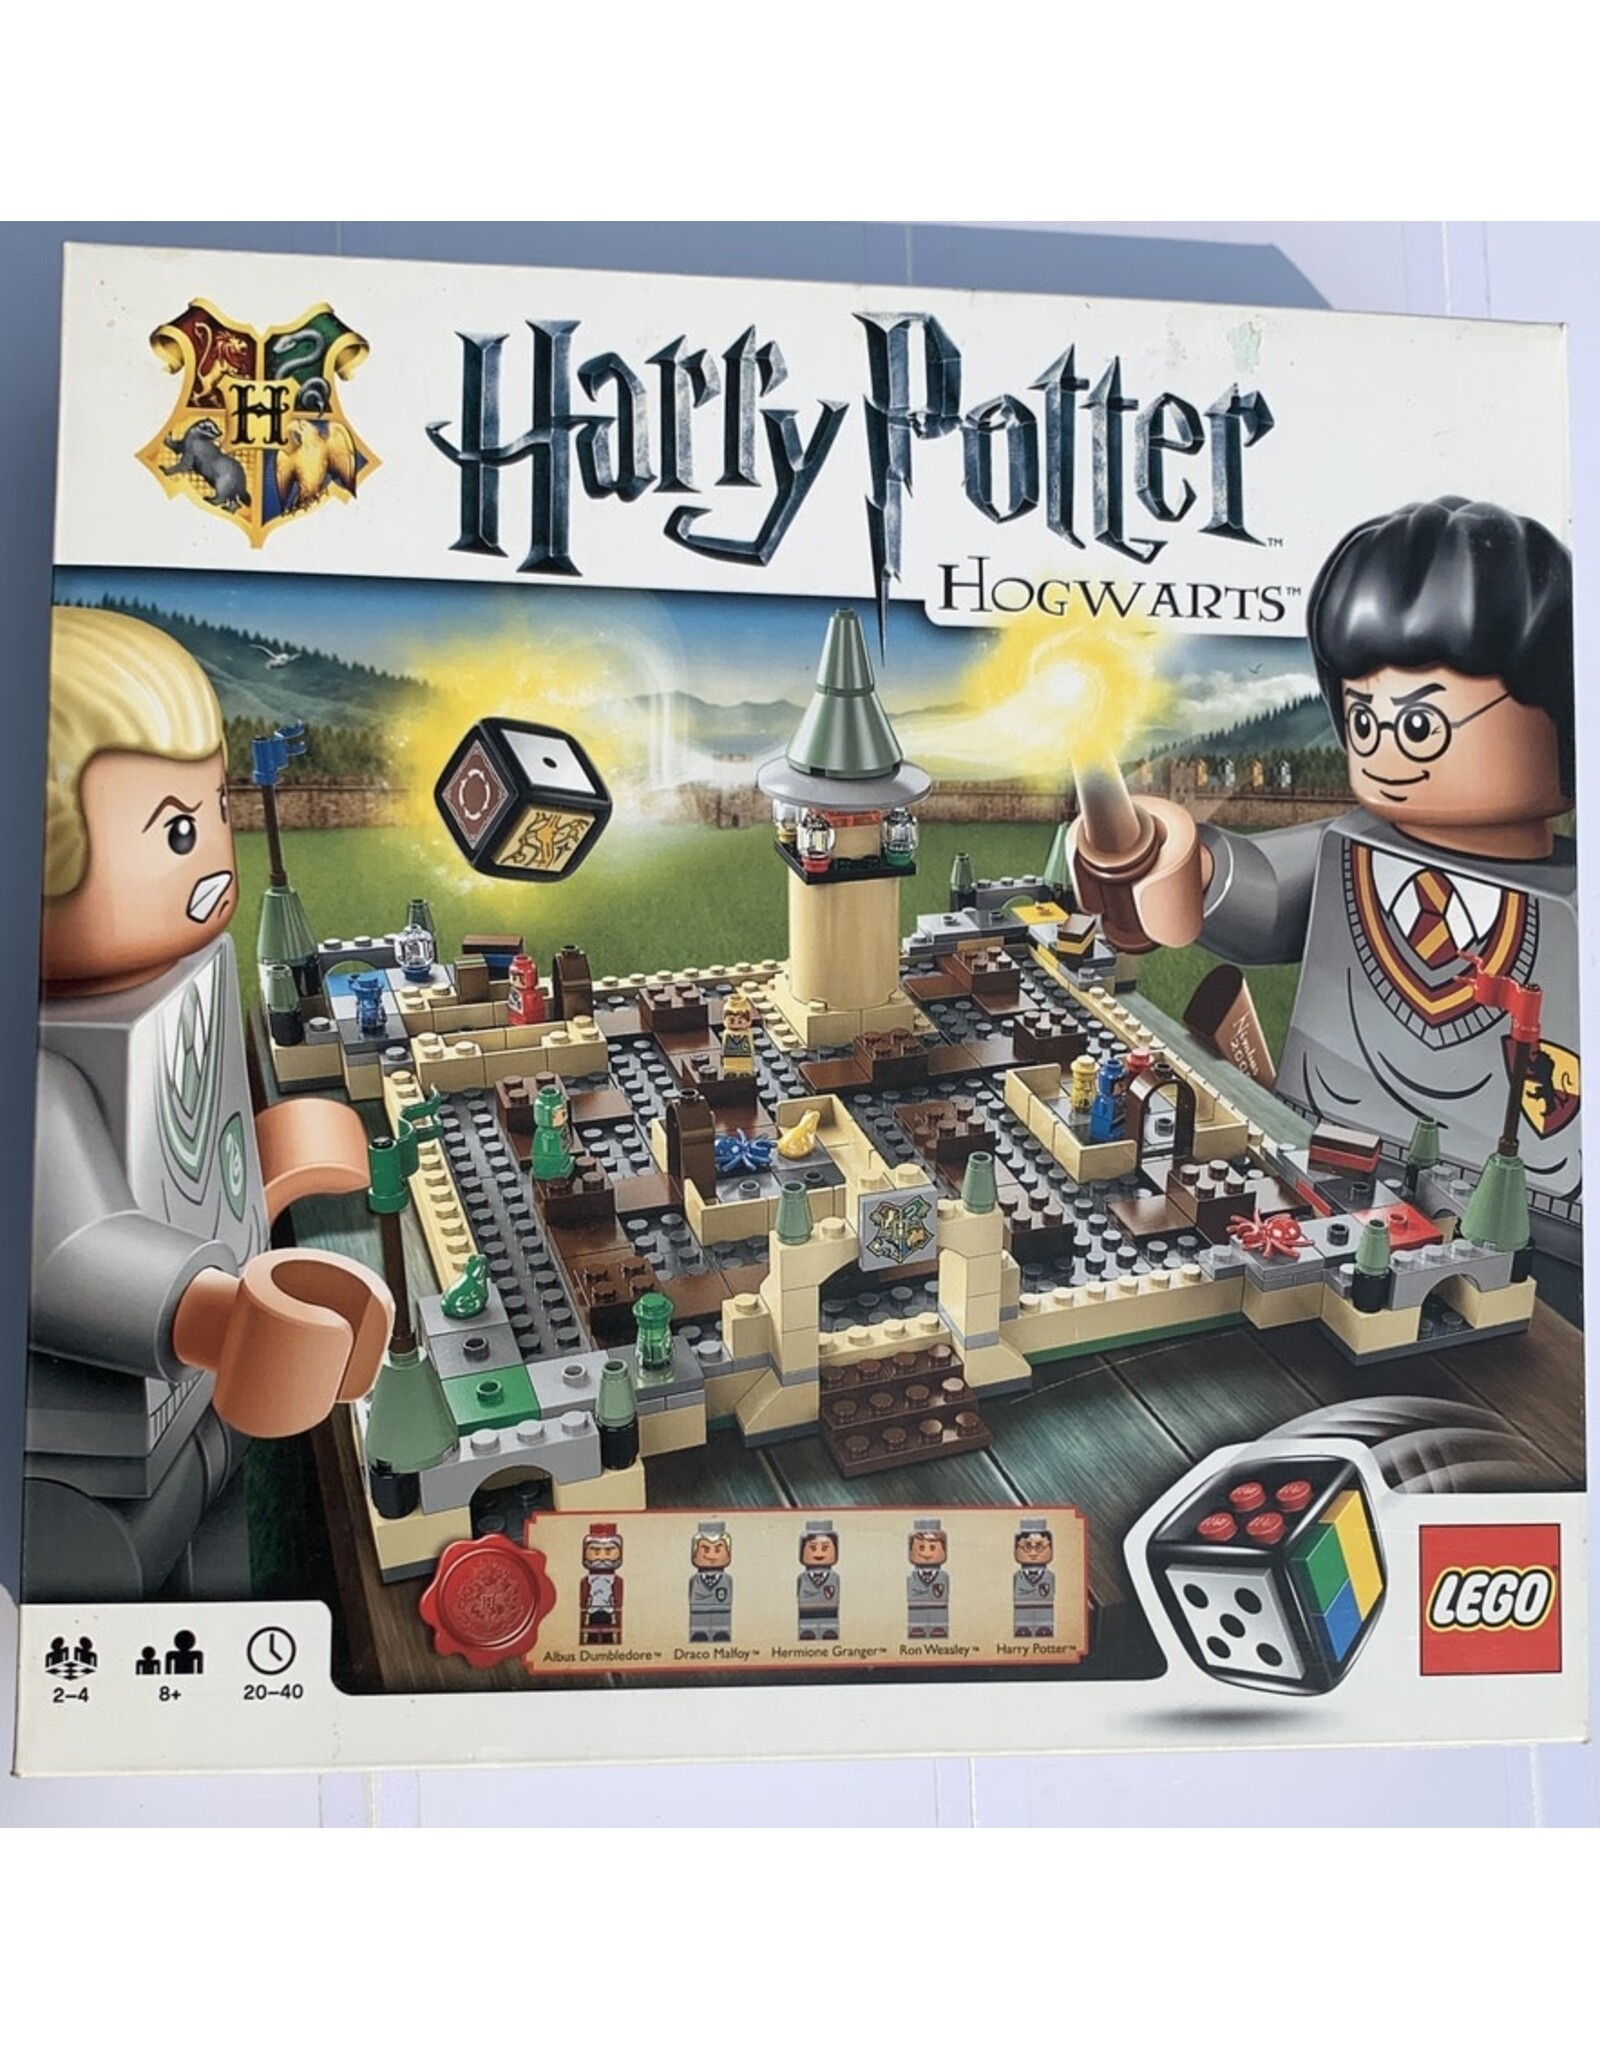 LEGO Harry Potter Hogwarts (2010)